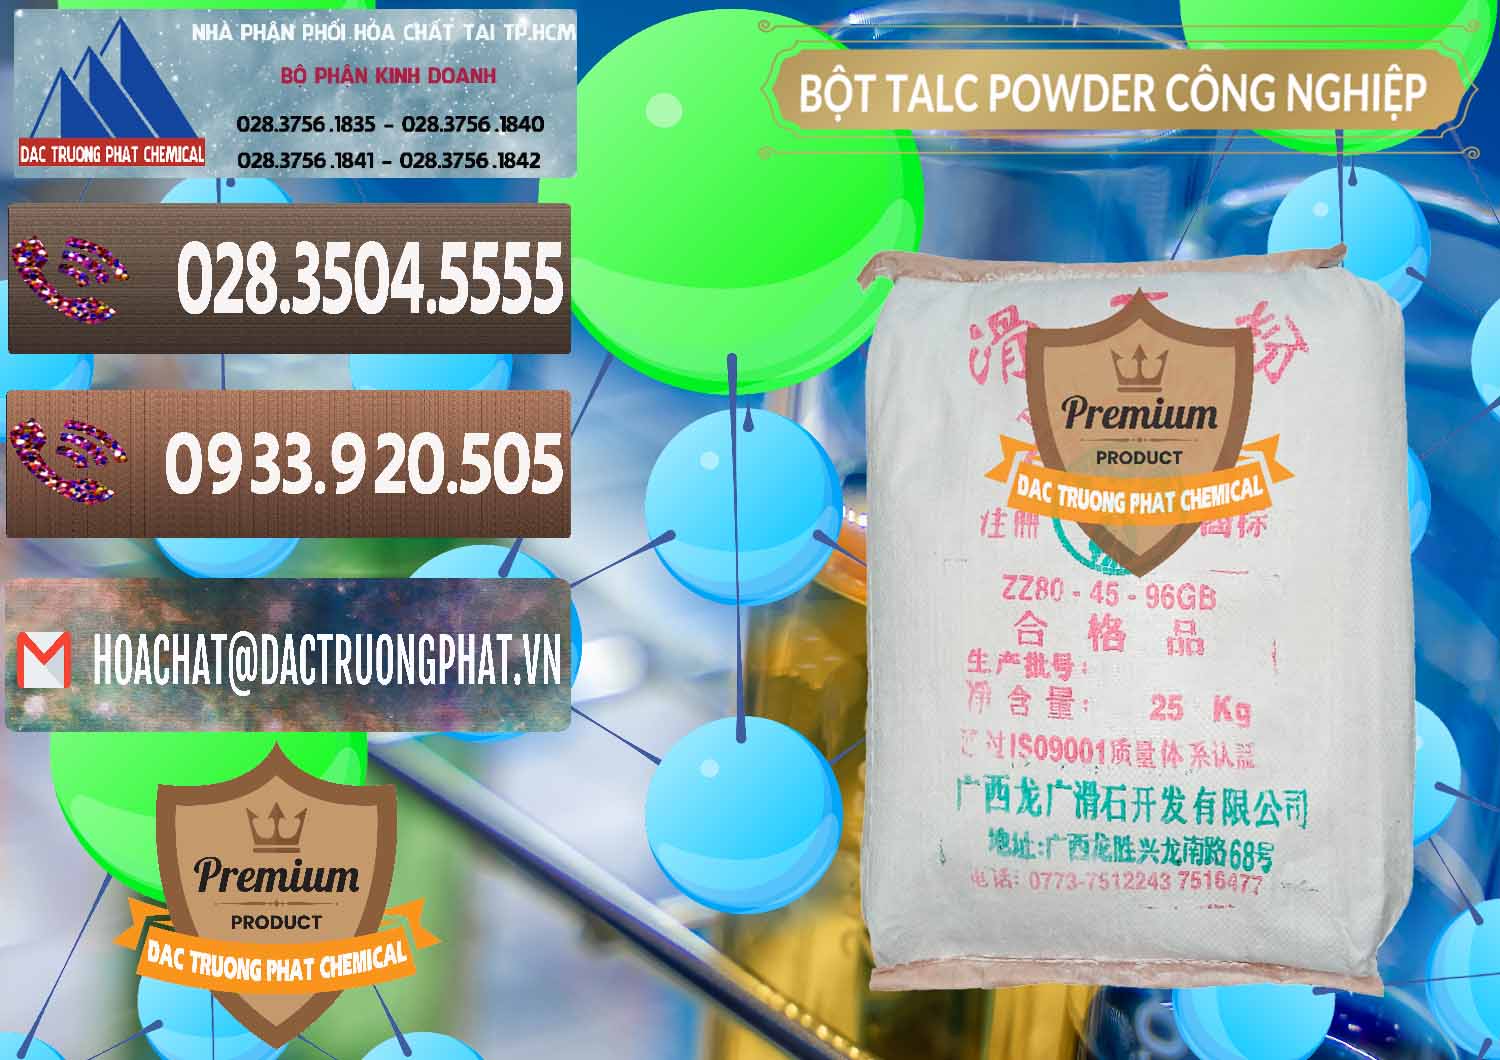 Cty chuyên nhập khẩu _ bán Bột Talc Powder Công Nghiệp Trung Quốc China - 0037 - Cty nhập khẩu _ cung cấp hóa chất tại TP.HCM - hoachatviet.net